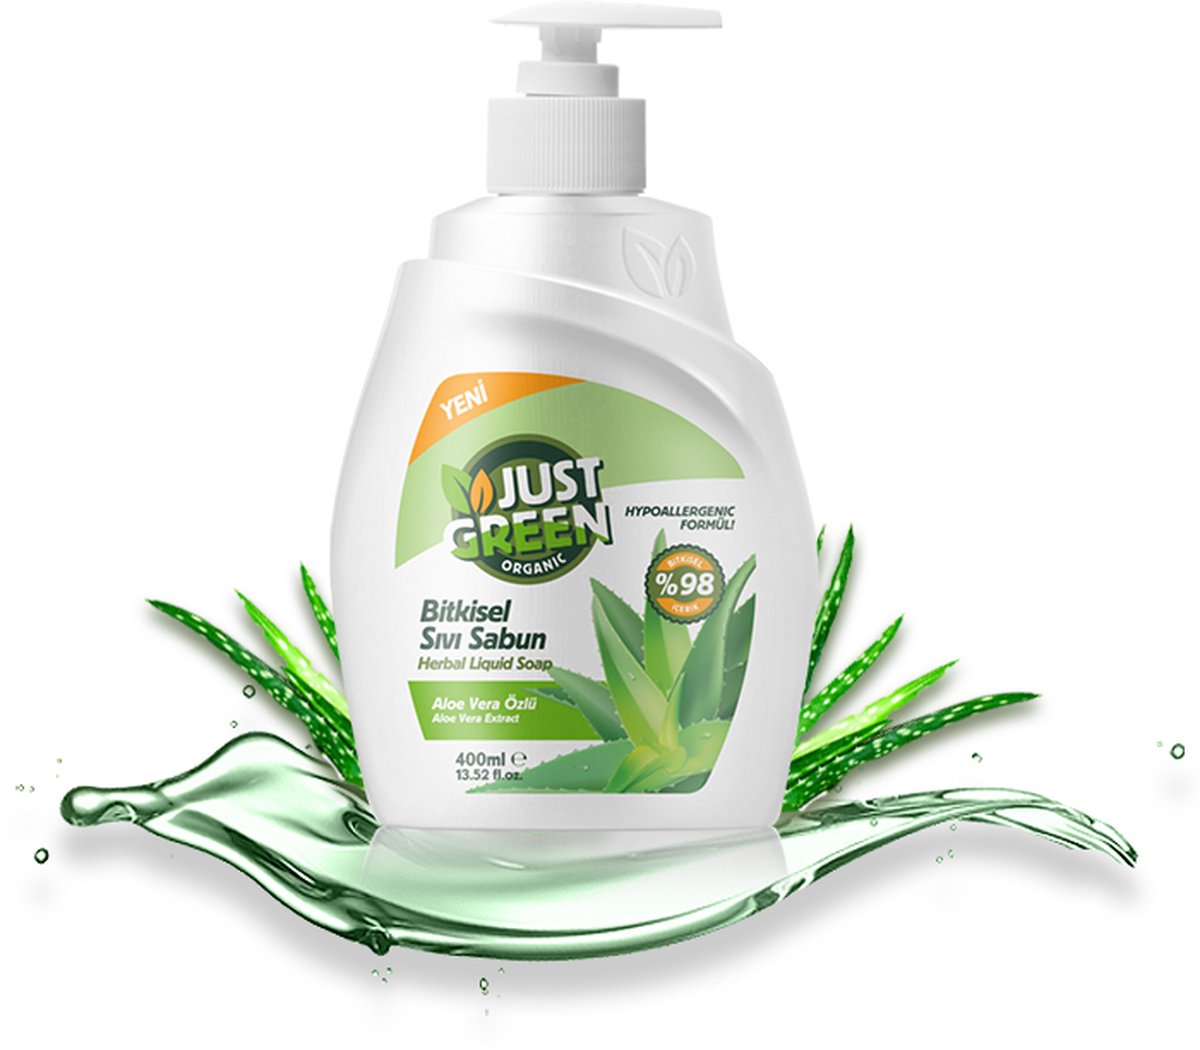 Just Green Organics - Natural Liquid Hand Soap, Aloe Vera, Niet-giftige Formule, Veganistisch en Milieuvriendelijk, Recyclebare Verpakking